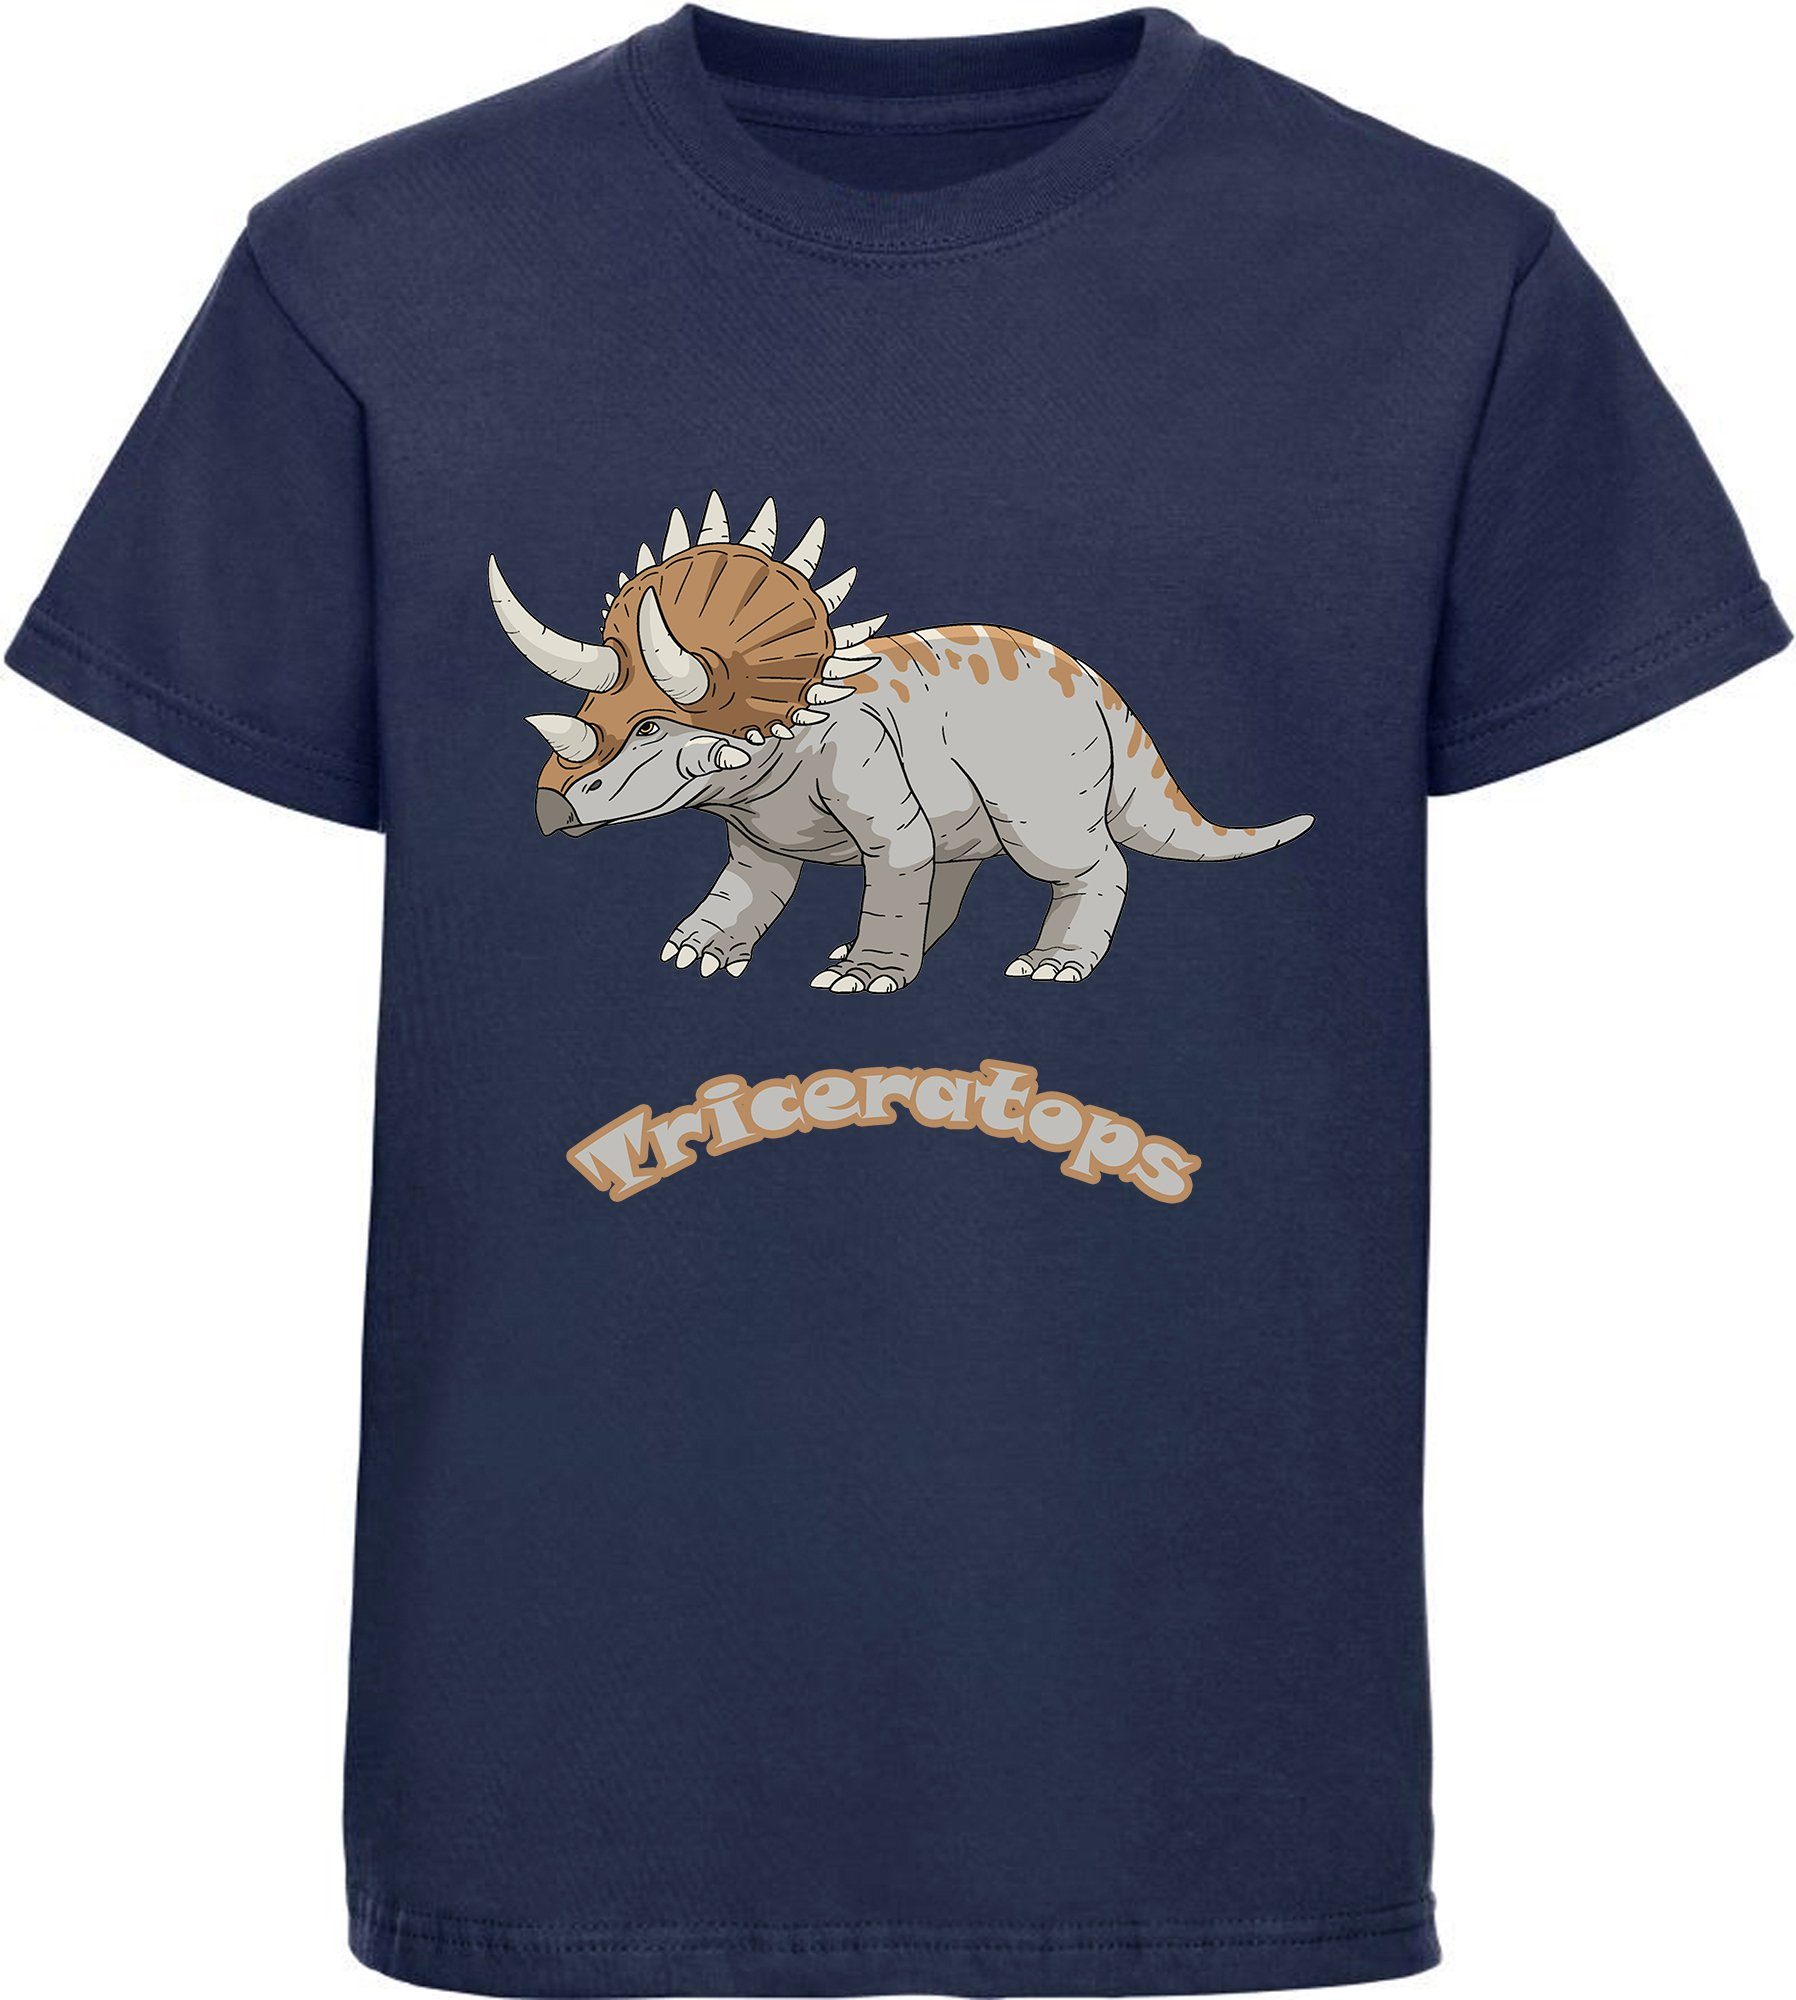 MyDesign24 T-Shirt bedrucktes Kinder T-Shirt mit Triceratops 100% Baumwolle mit Dino Aufdruck, navy blau i52